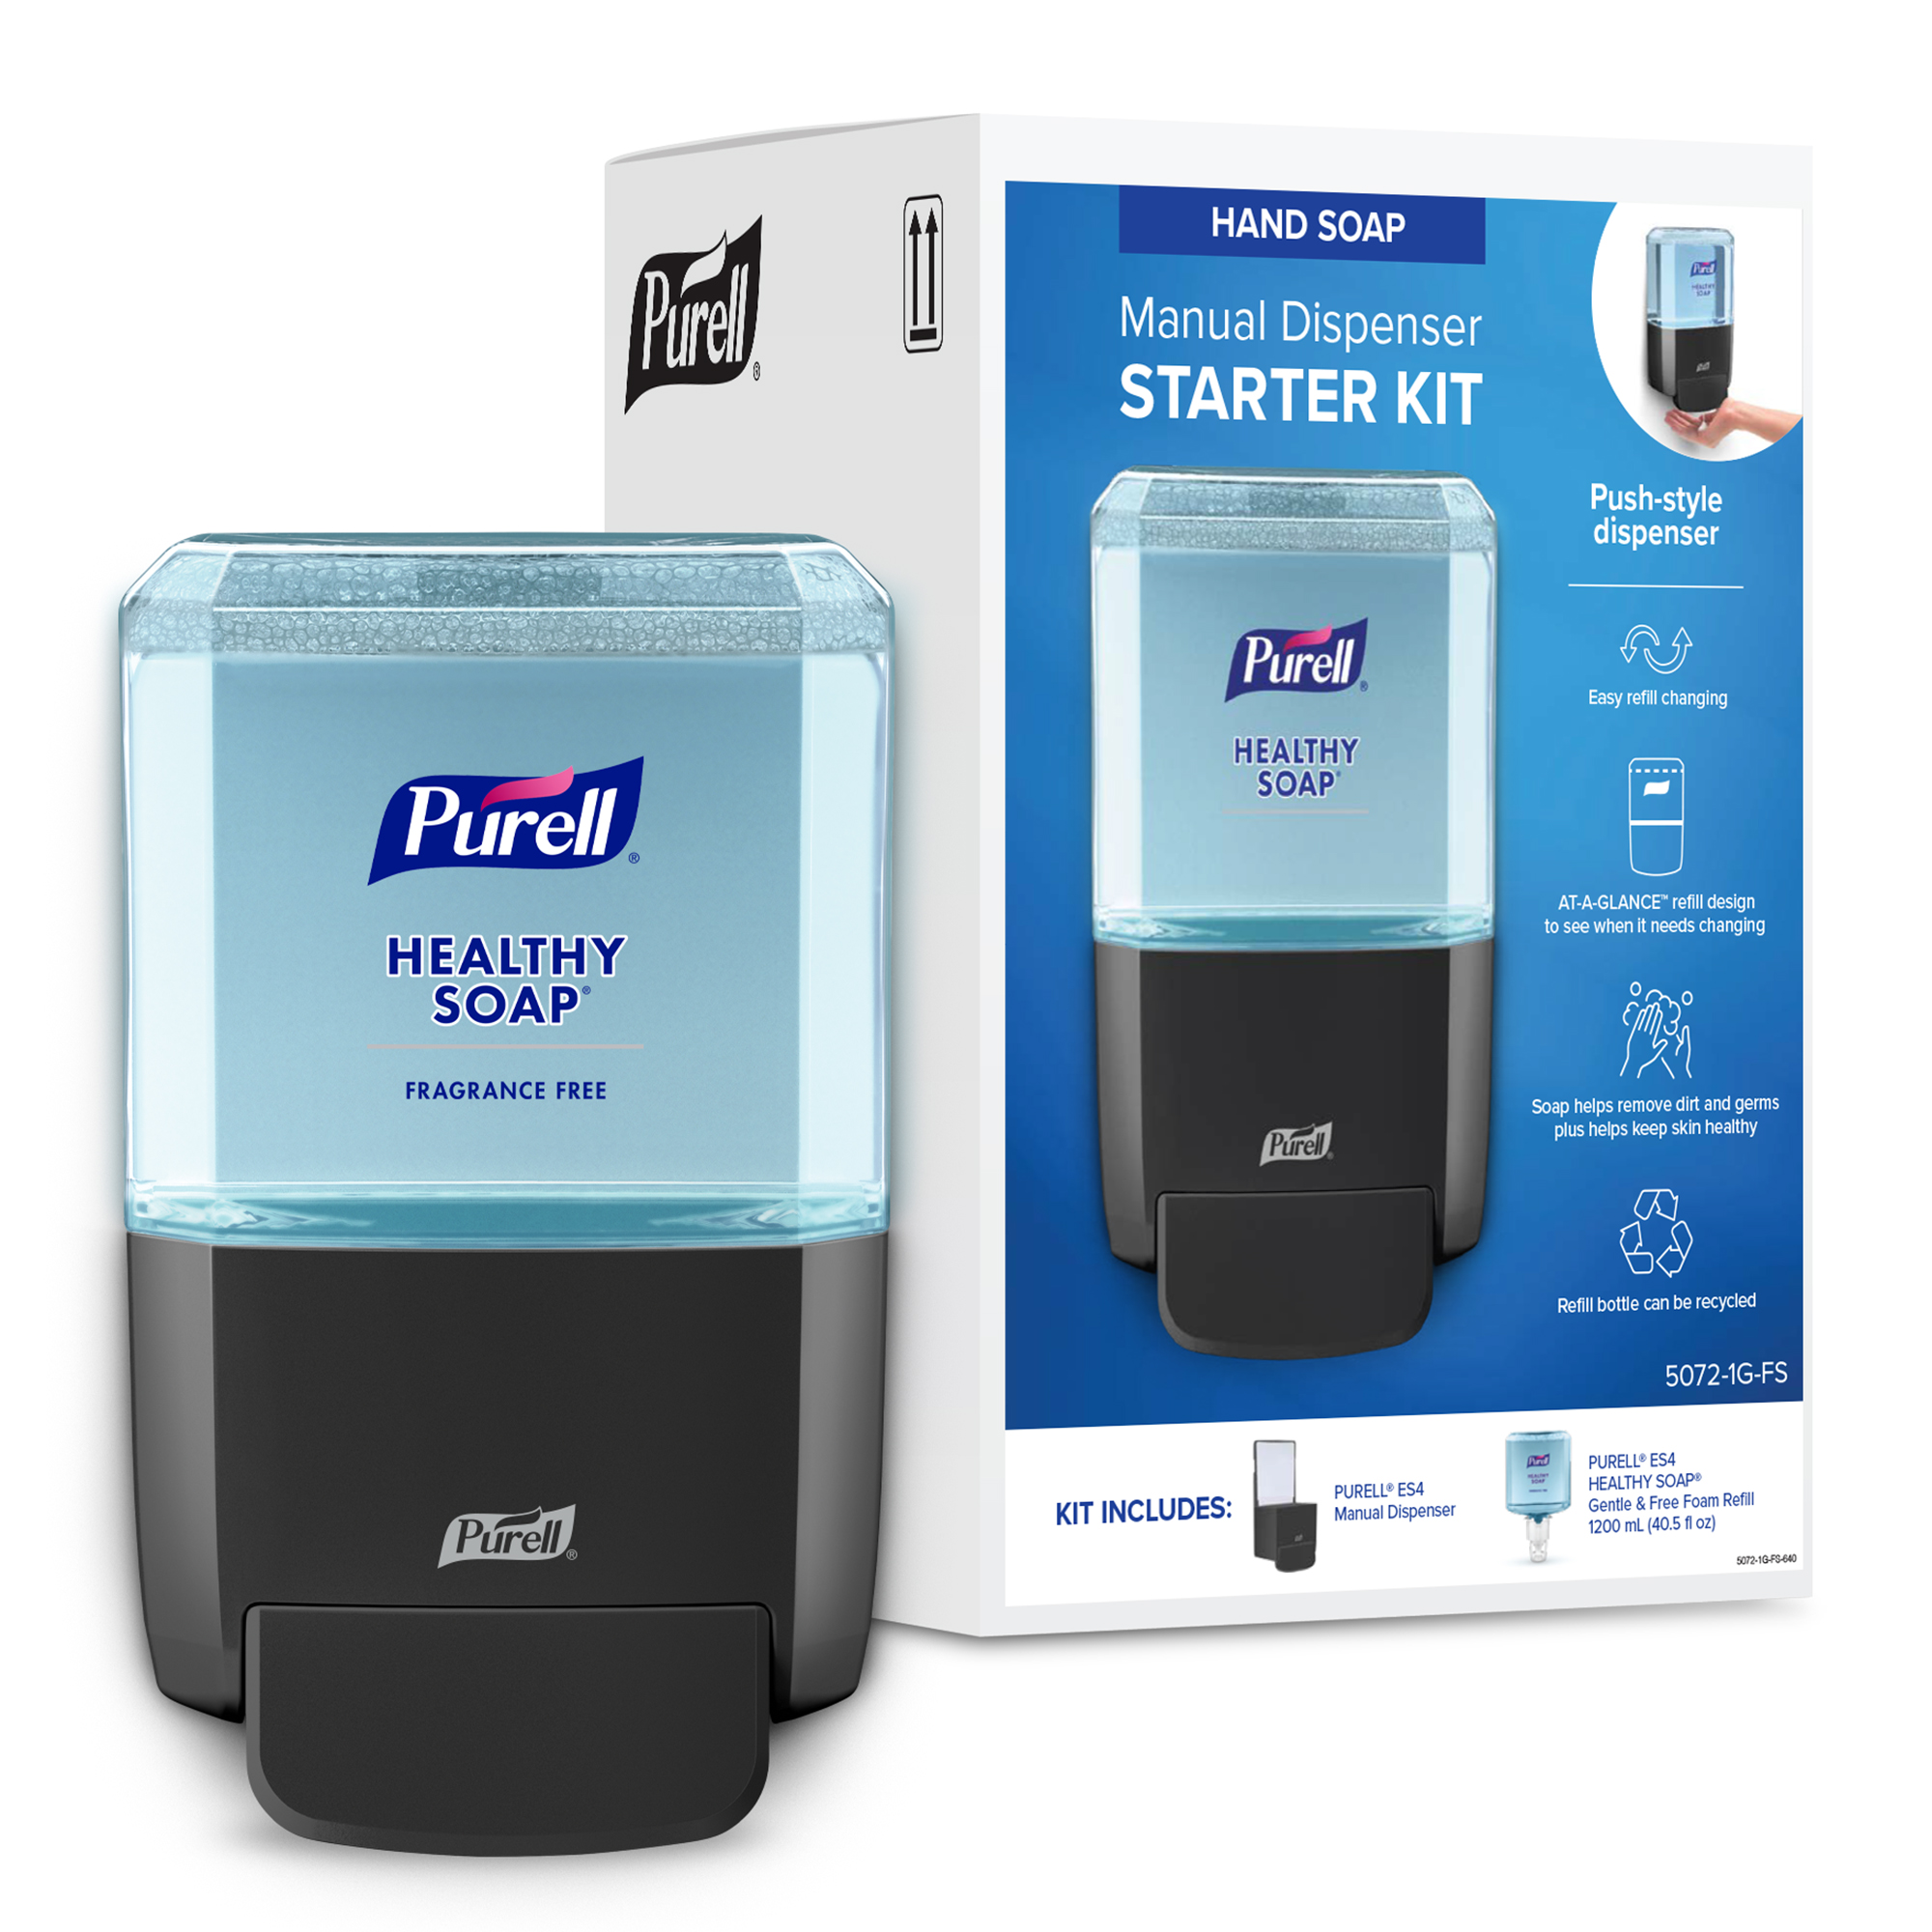 GOJO - PURELL HEALTHY SOAP Gentle & Free Foam ES4 Starter Kit -  5072-1G-FS